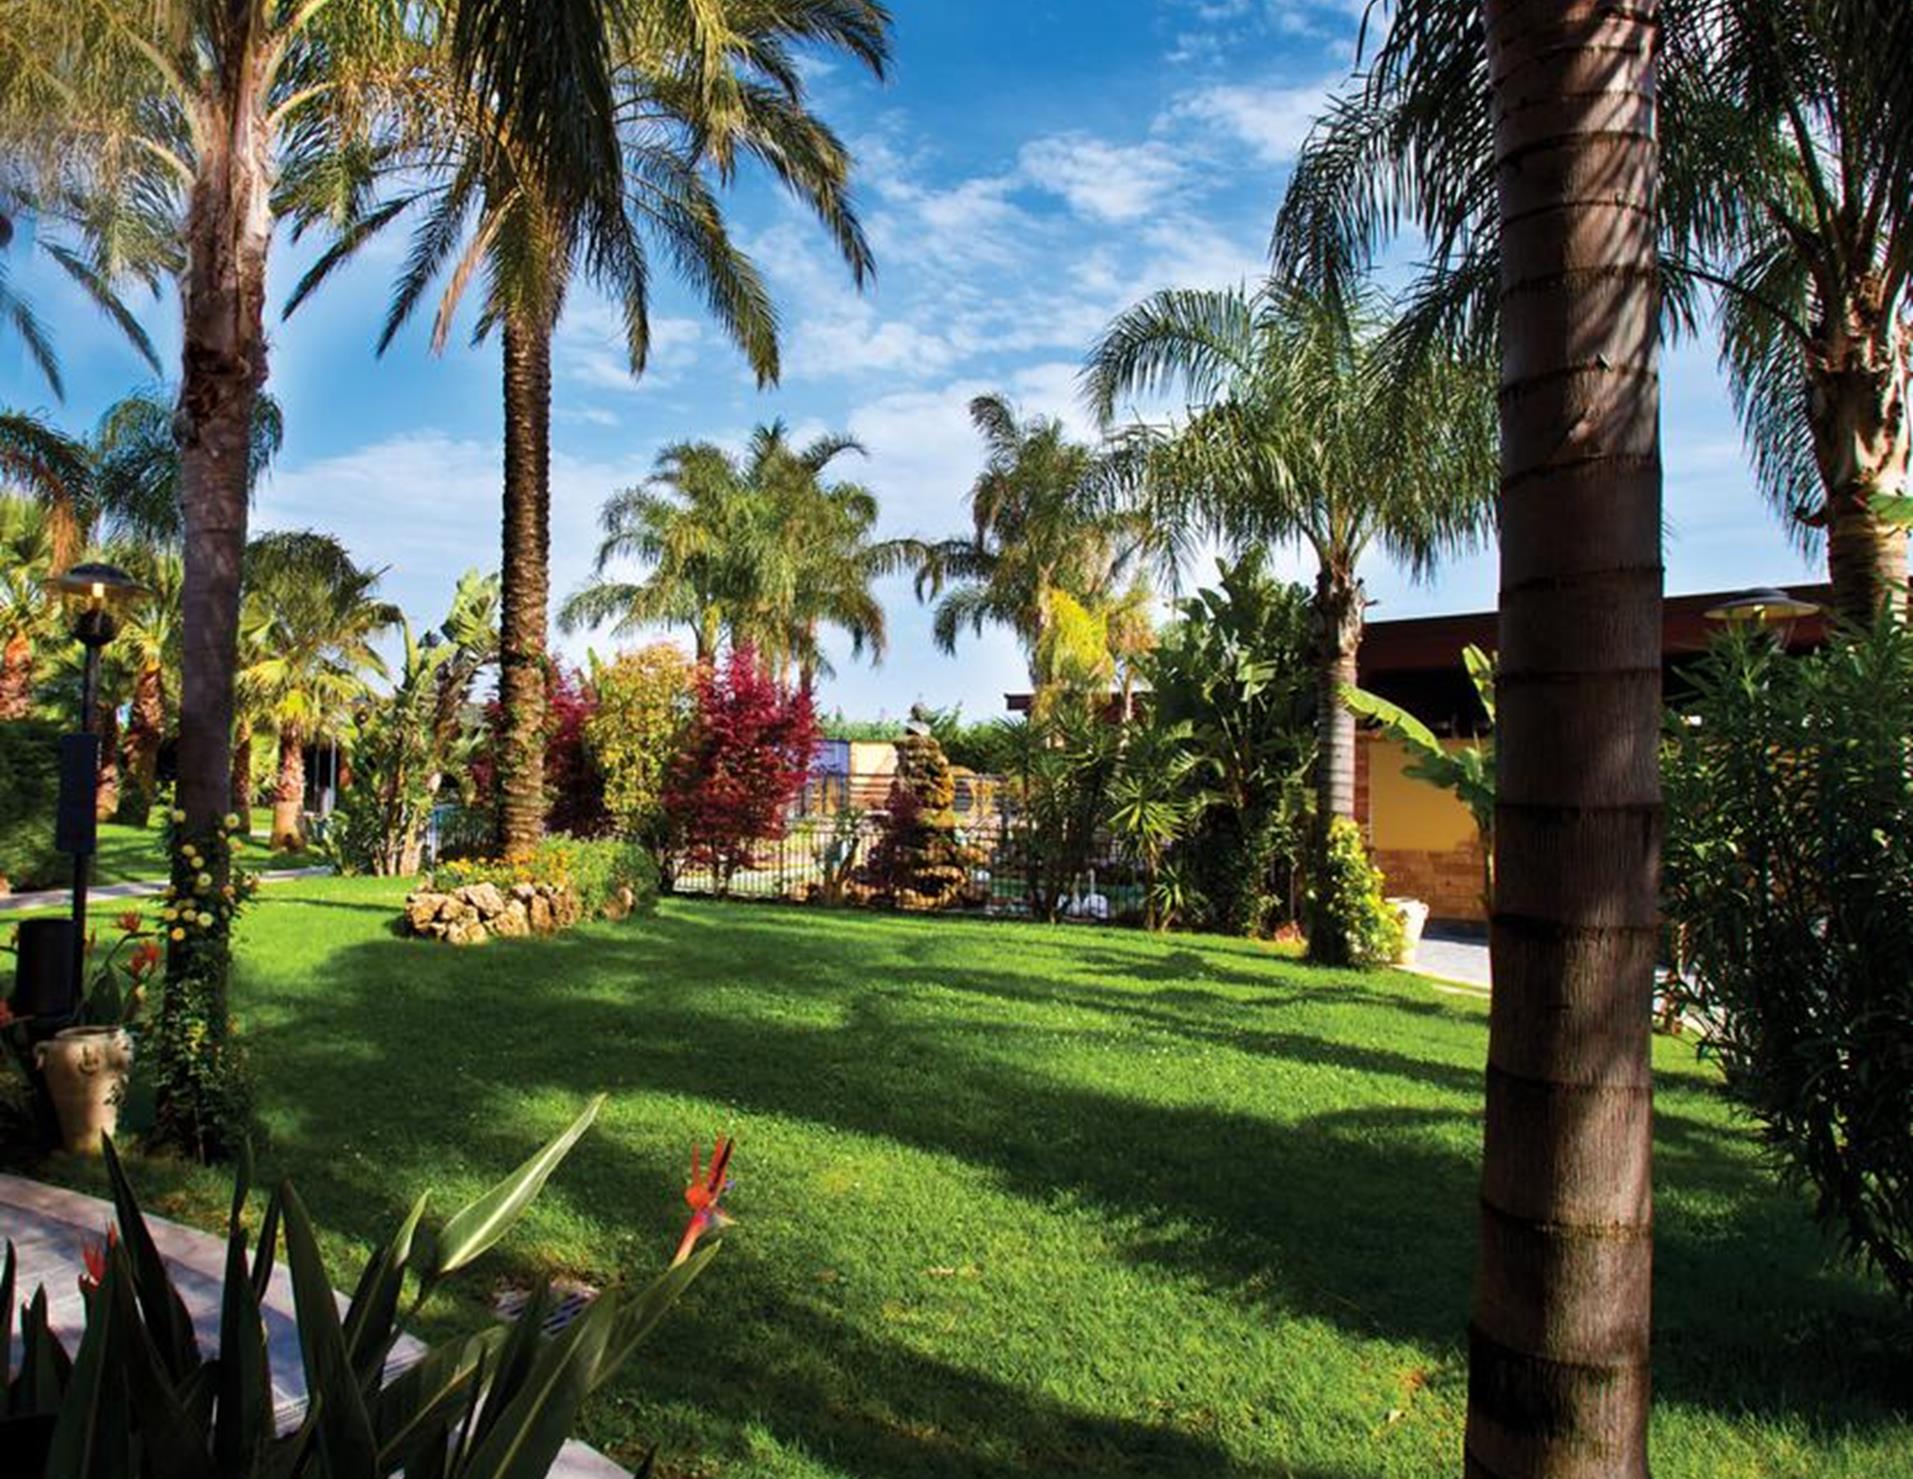 San Luca Hotel - Green Garden2